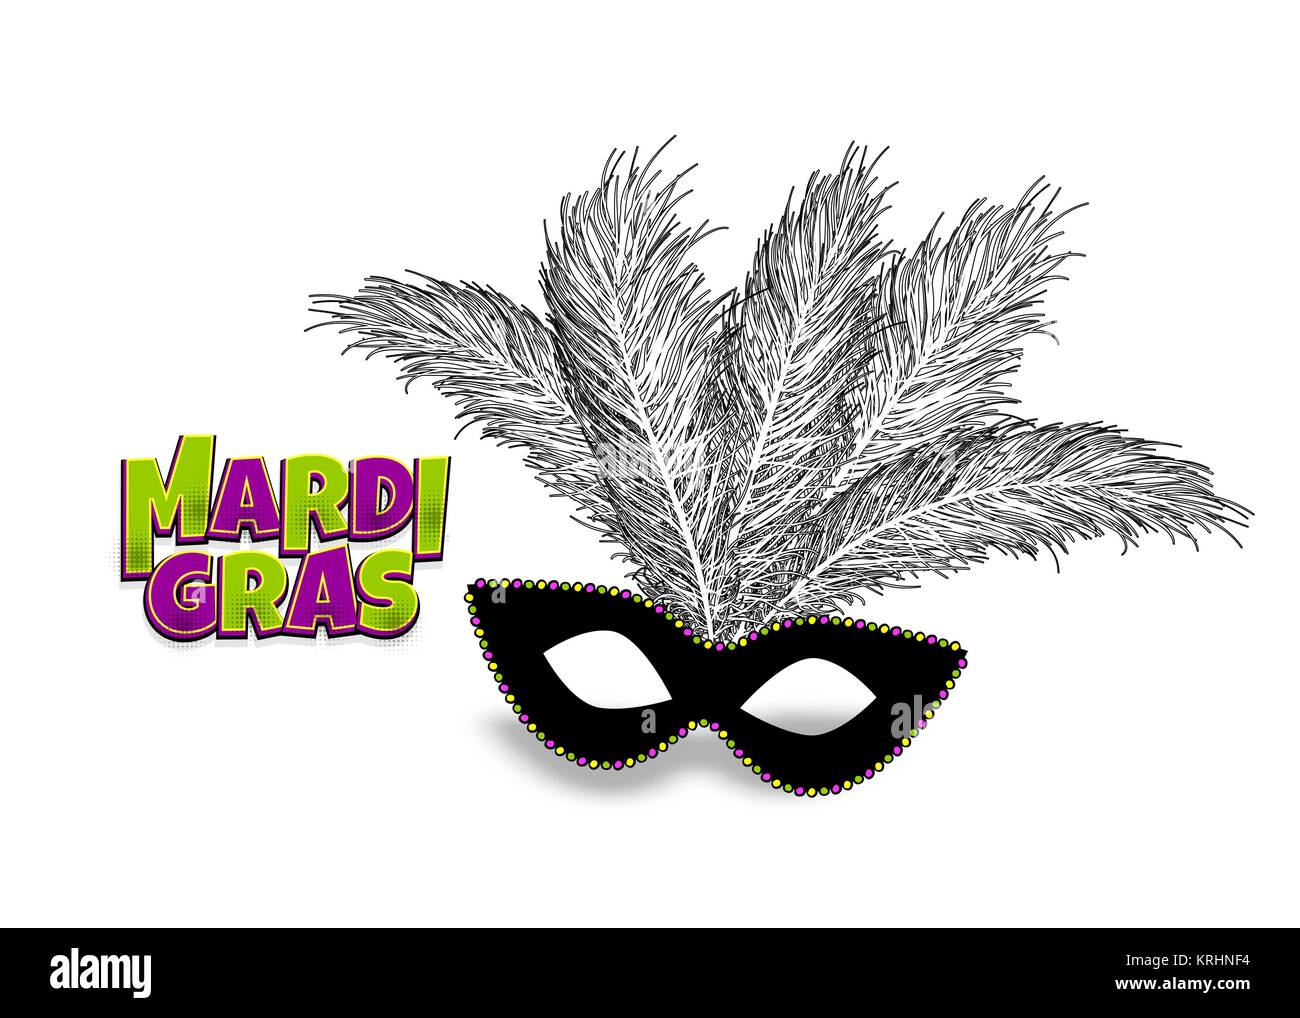 Mardi gras carnival vector illustration tradução é em francês para fat  tuesday festival com máscaras